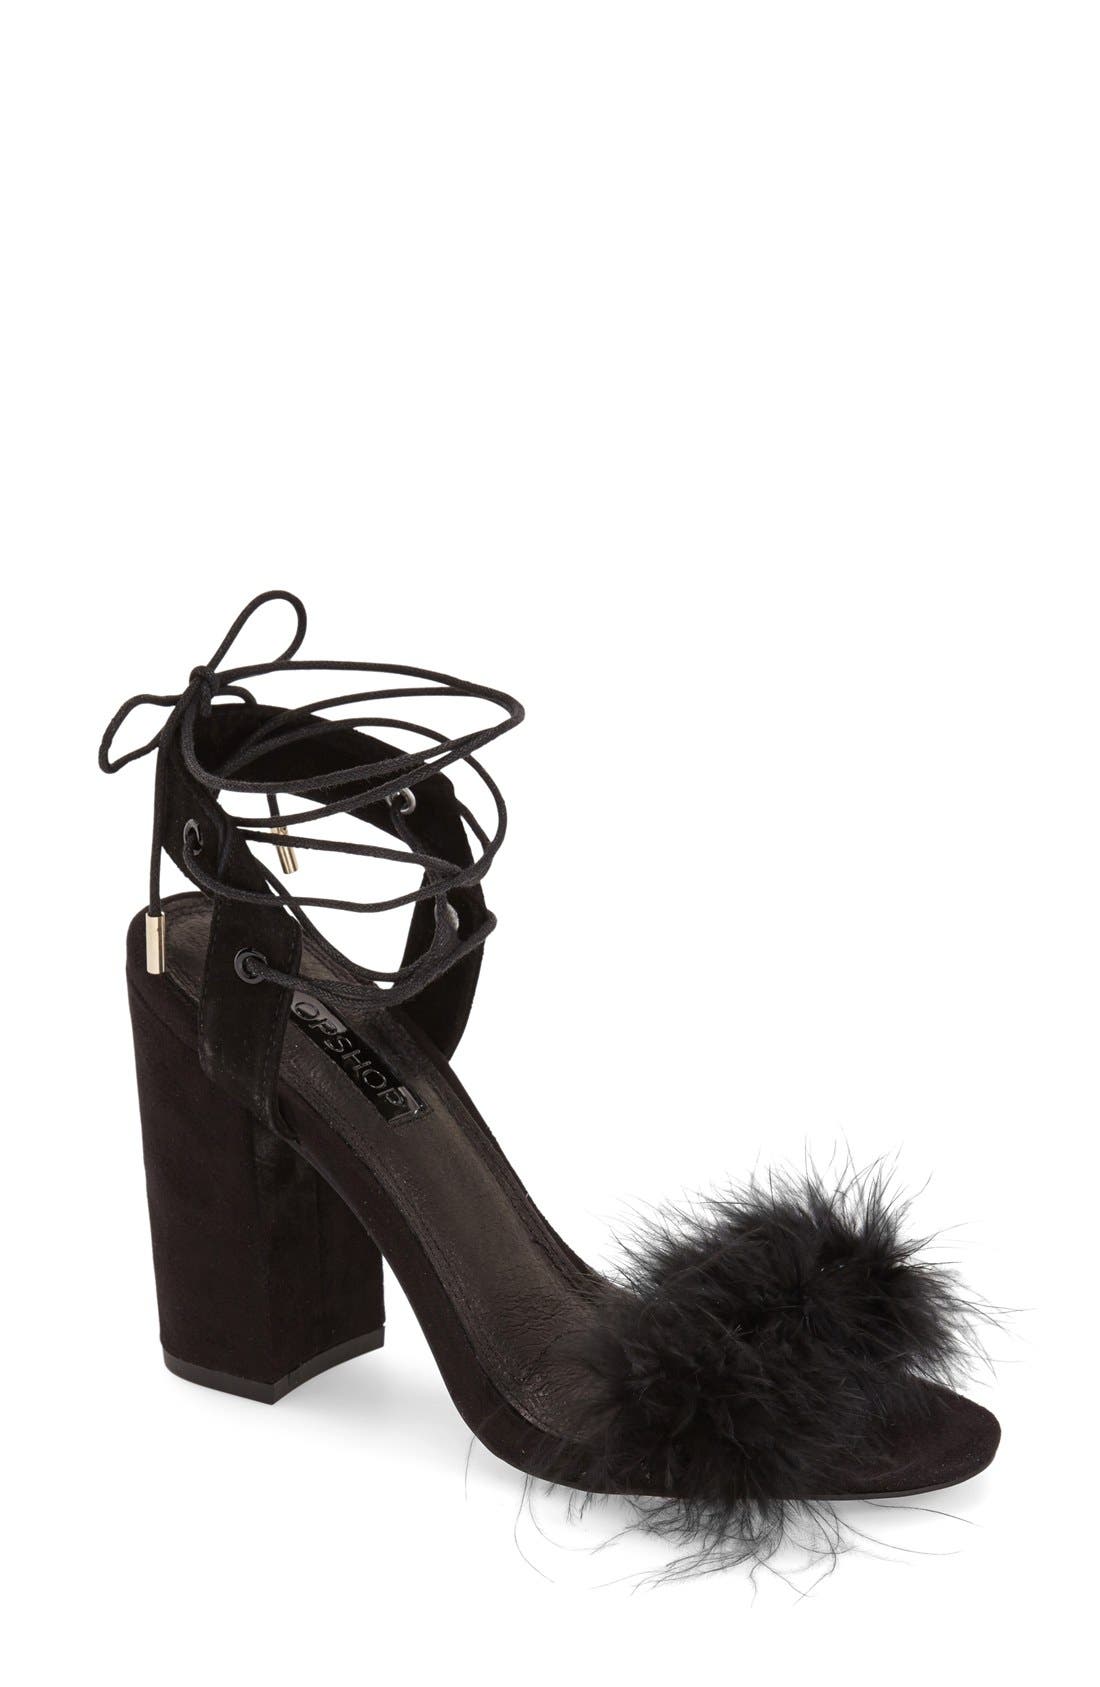 marabou feather heels